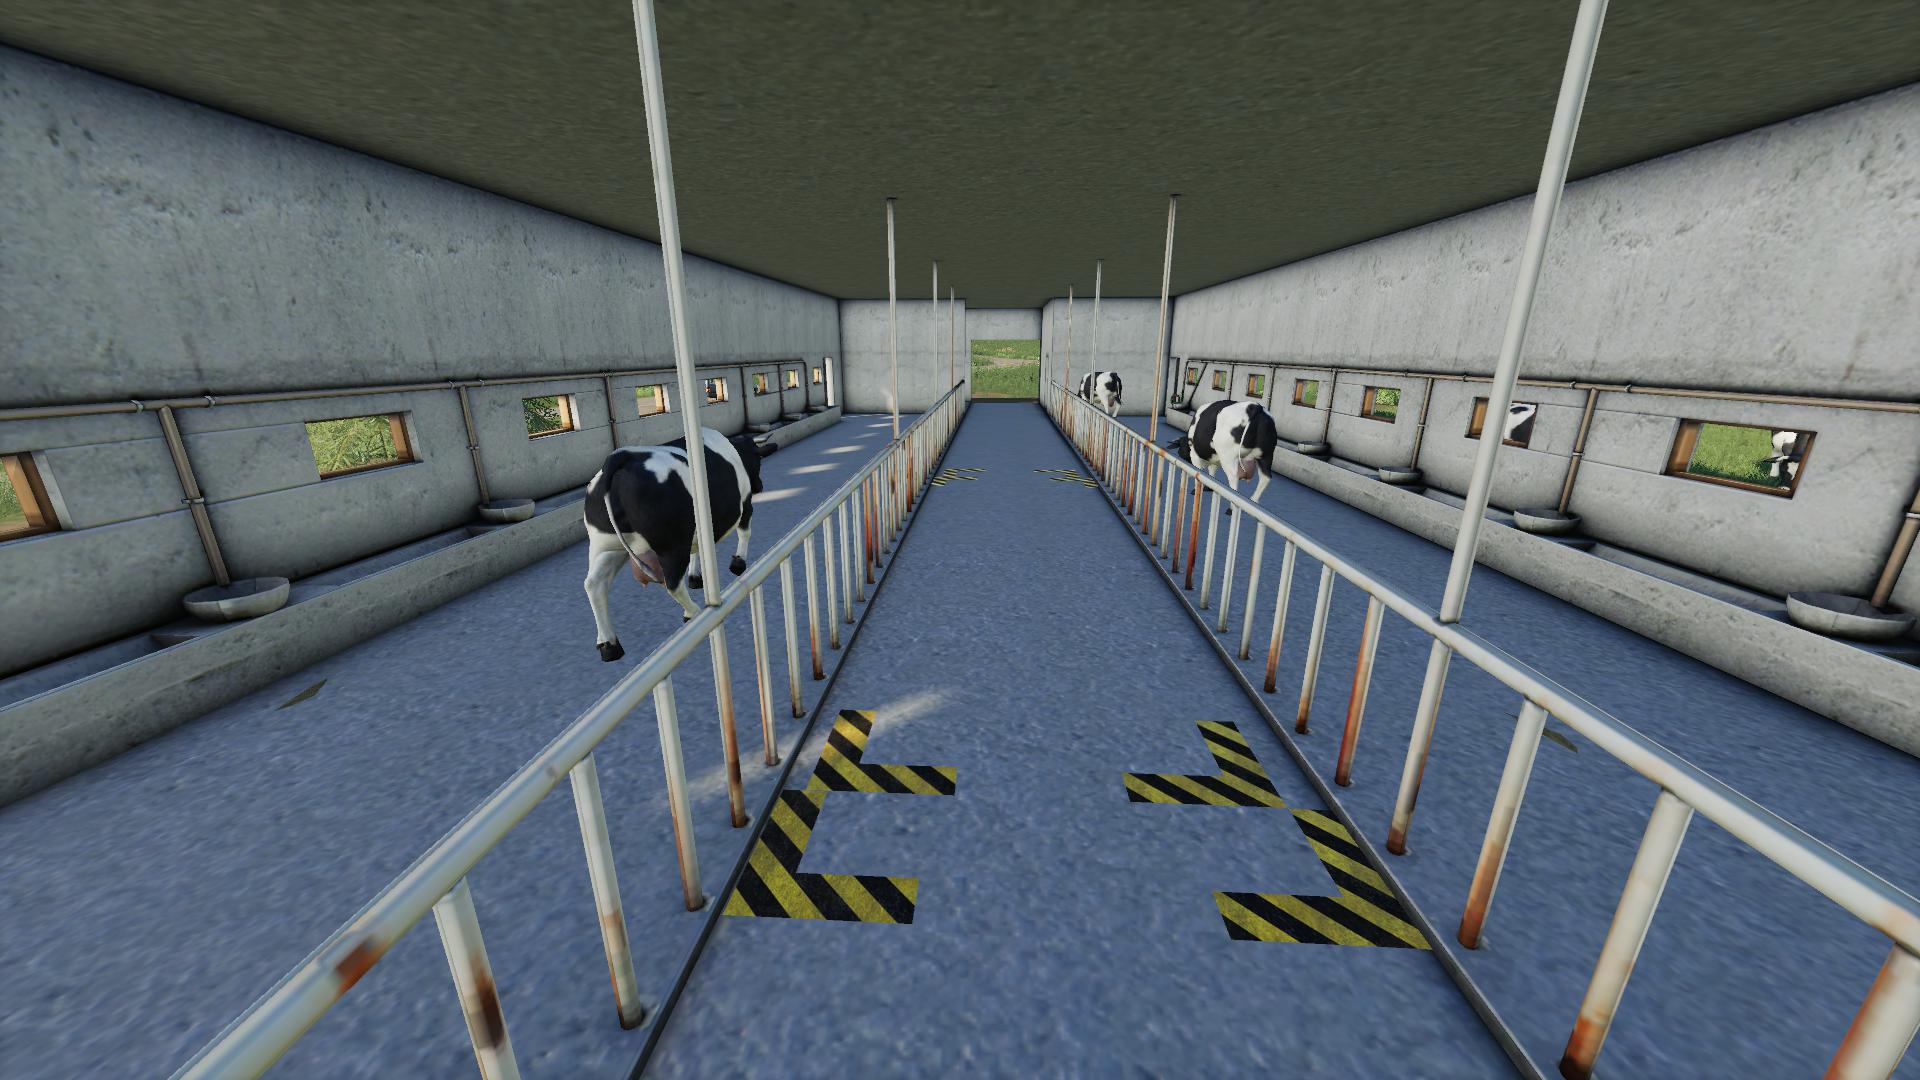 Fs19 Polish Cow Pasture V11 Farming Simulator 19 Modsclub 7541